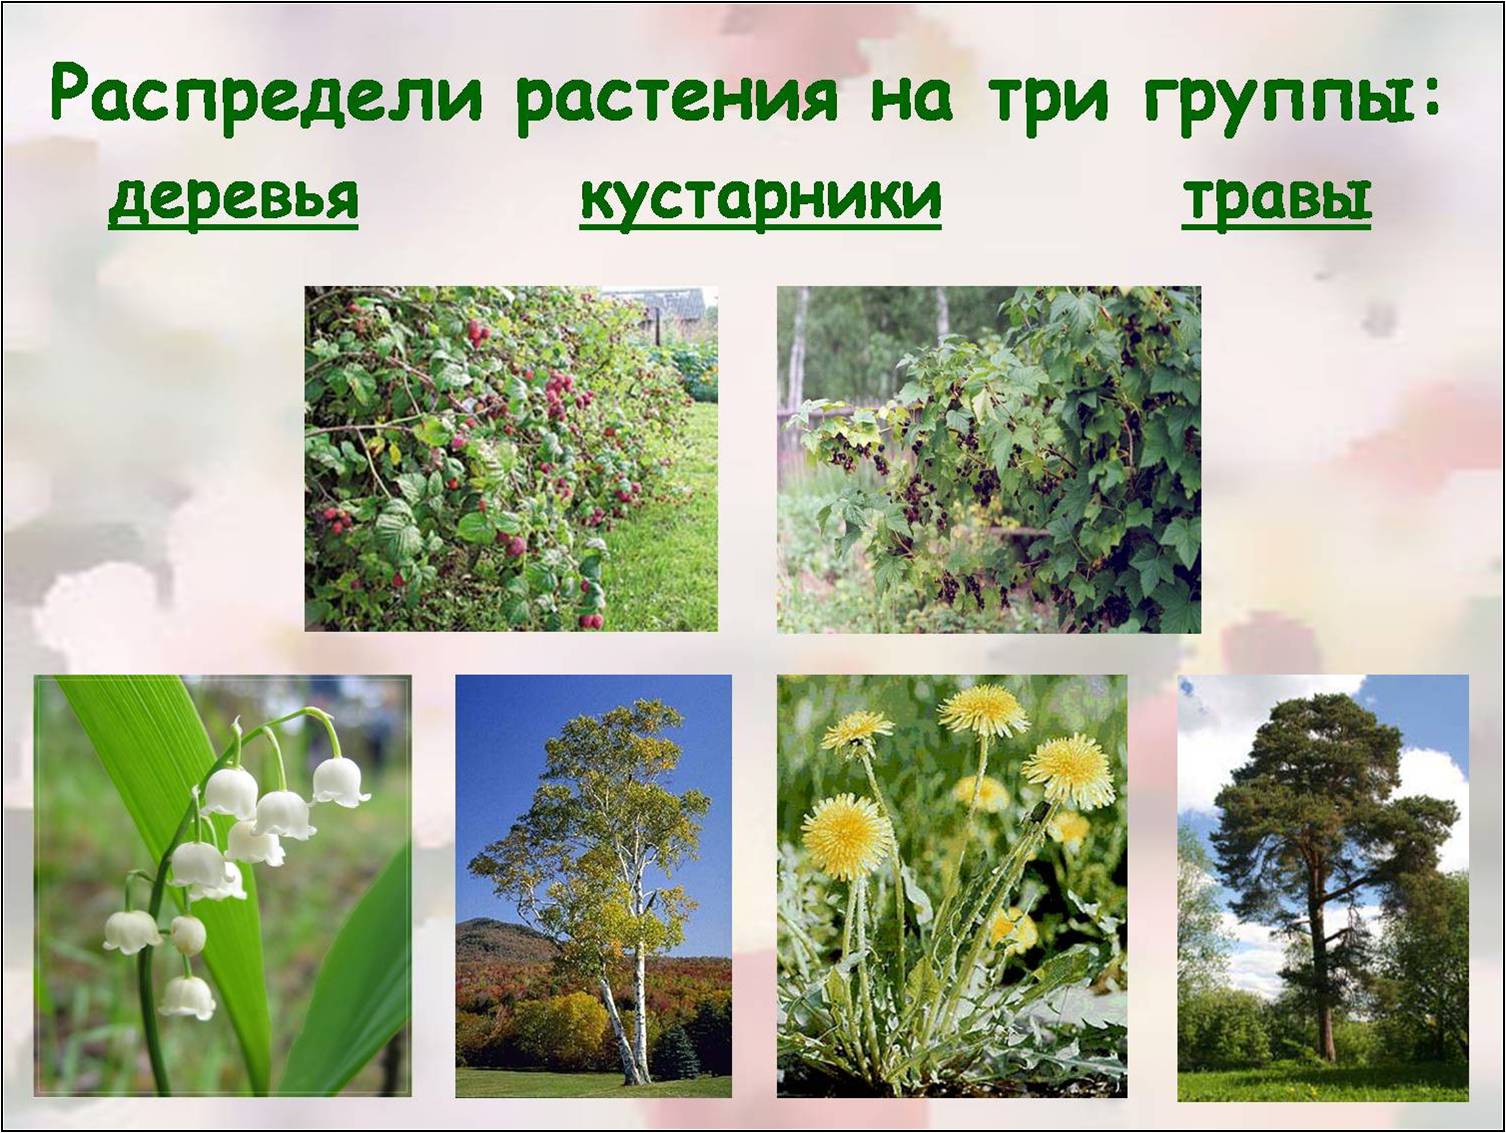 Распределите культурные растения по группам. Распределите растения по группам. Распредели растения на группы. Распределите растения на группы. Деревья кустарники травы.